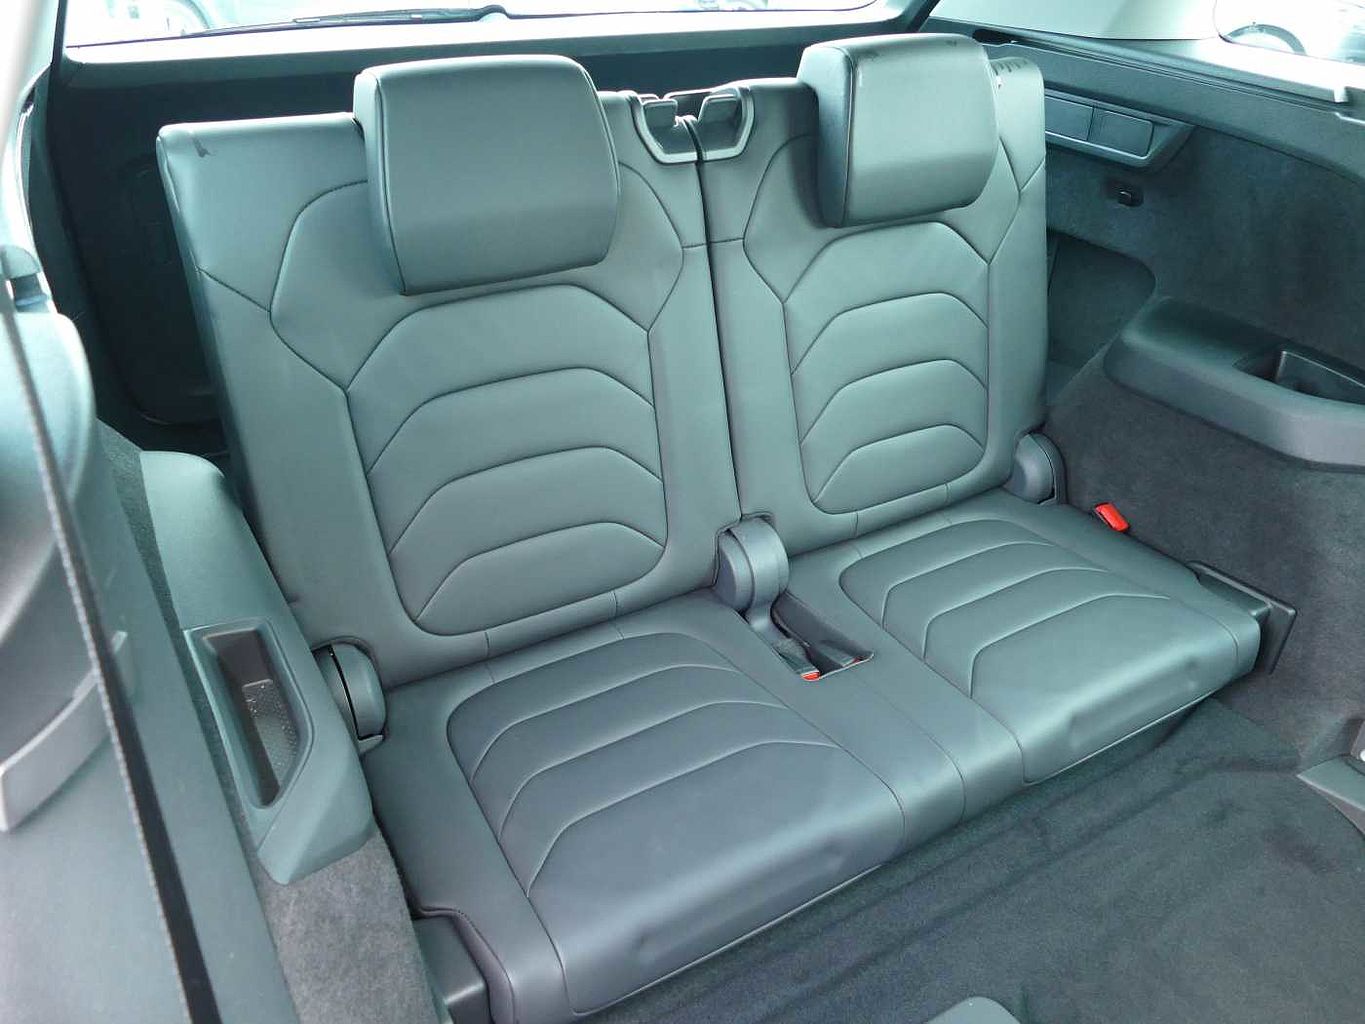 SKODA Kodiaq 1.5 TSI (150ps) SE L Executive (7 Seats) Auto/DSG SUV